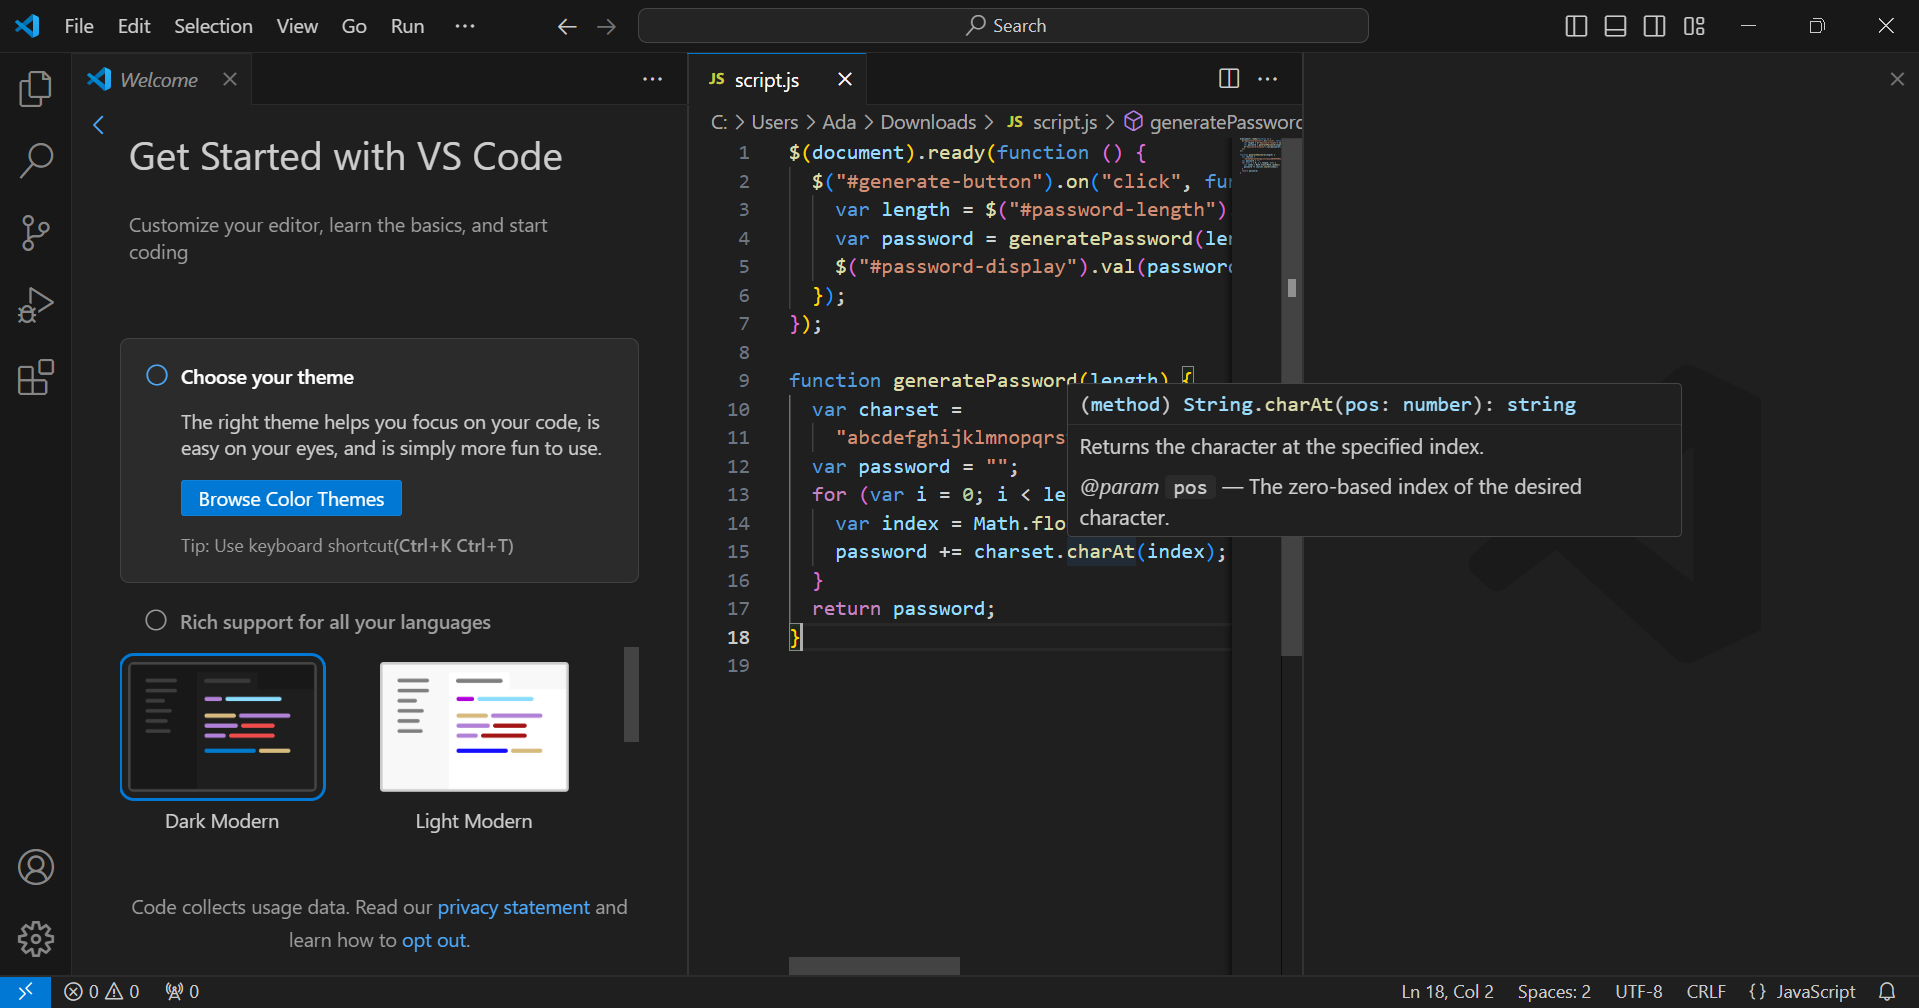 Ένα στιγμιότυπο οθόνης που δείχνει τον κώδικα VS σε χρήση στα Windows